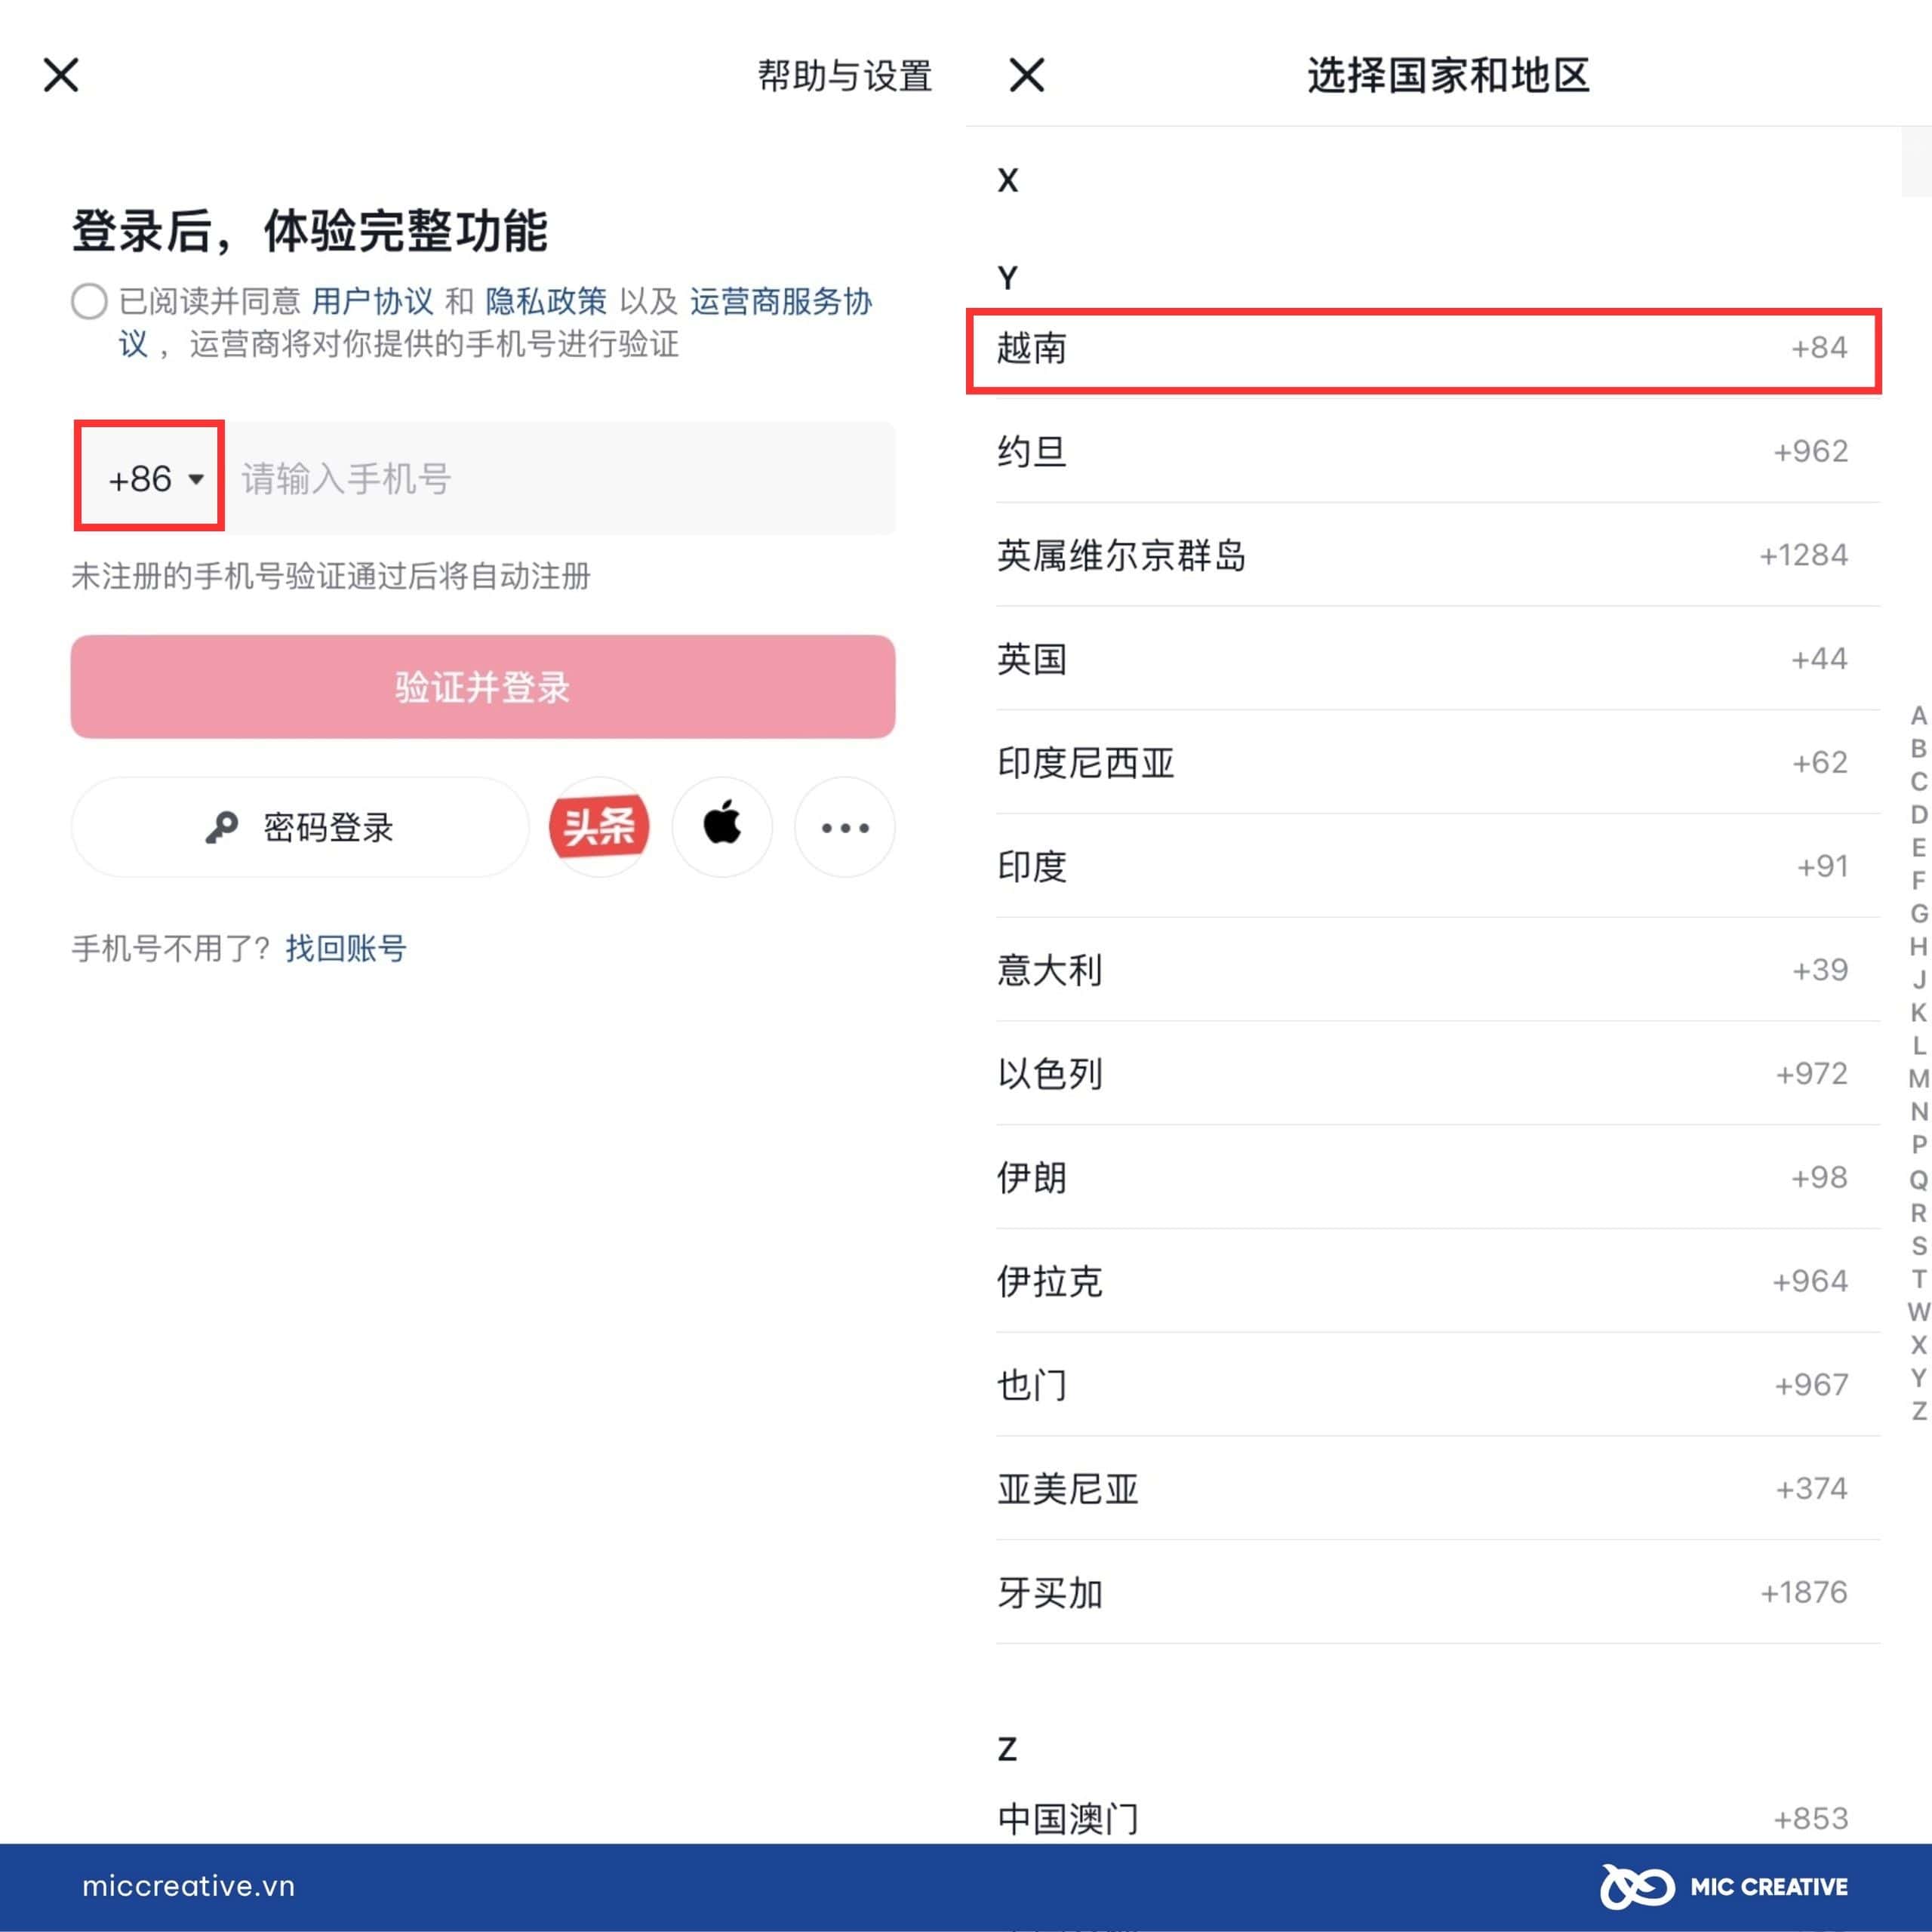 Cách đăng nhập TikTok Trung Quốc bằng số điện thoại đơn giản nhất